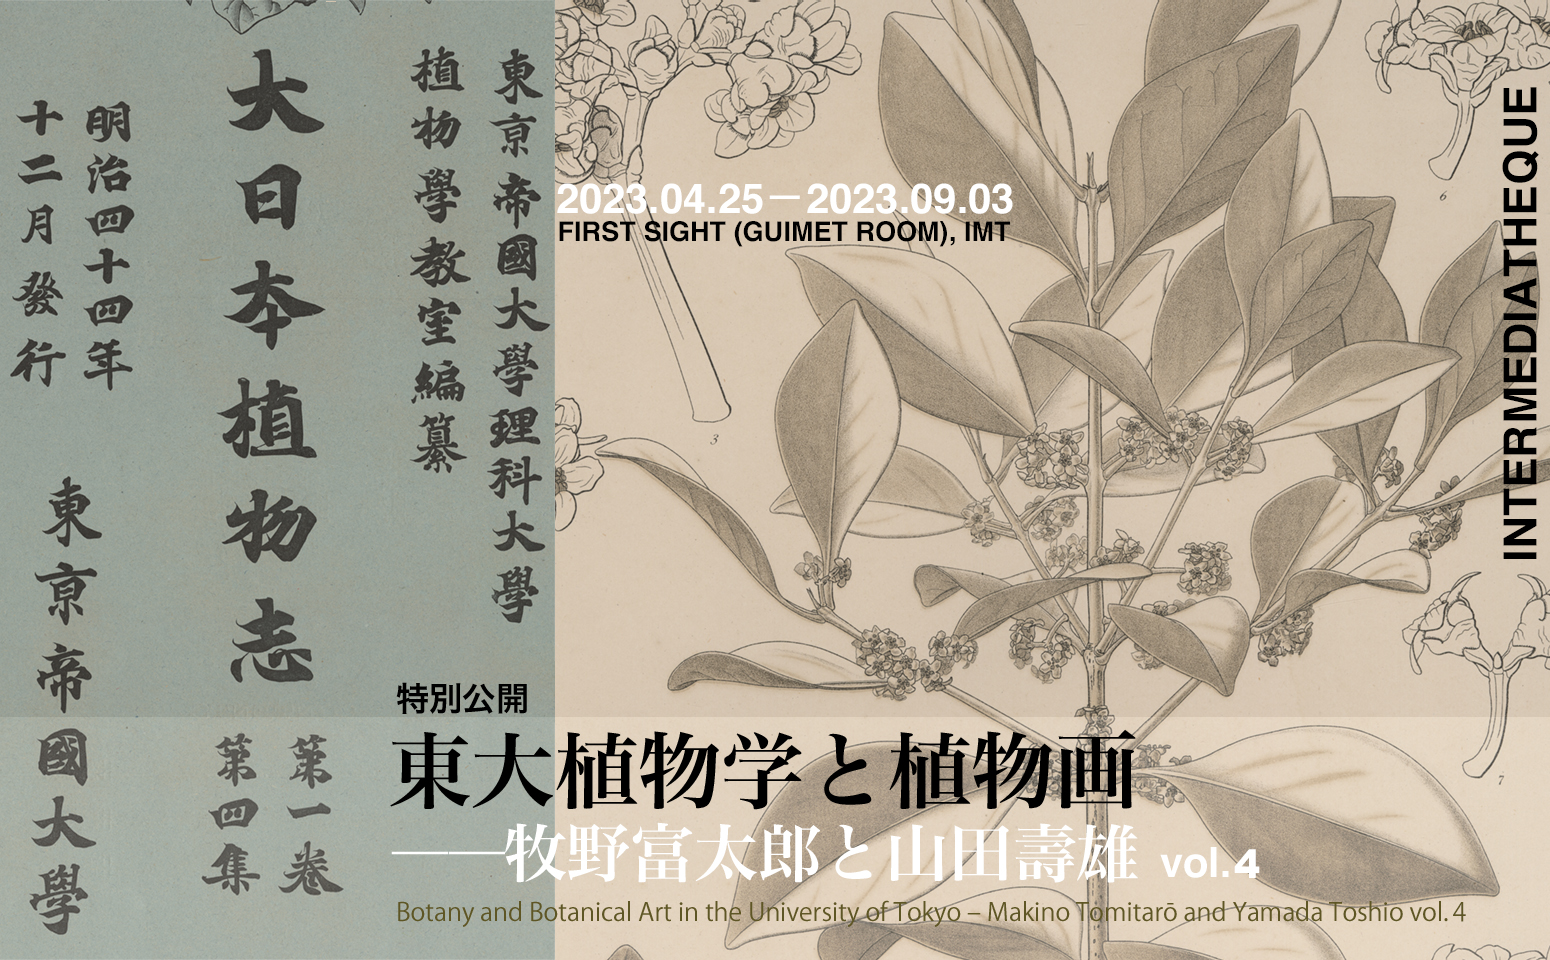 Botany and Botanical Art in the University of Tokyo – Makino Tomitarō and Yamada Toshio vol.4